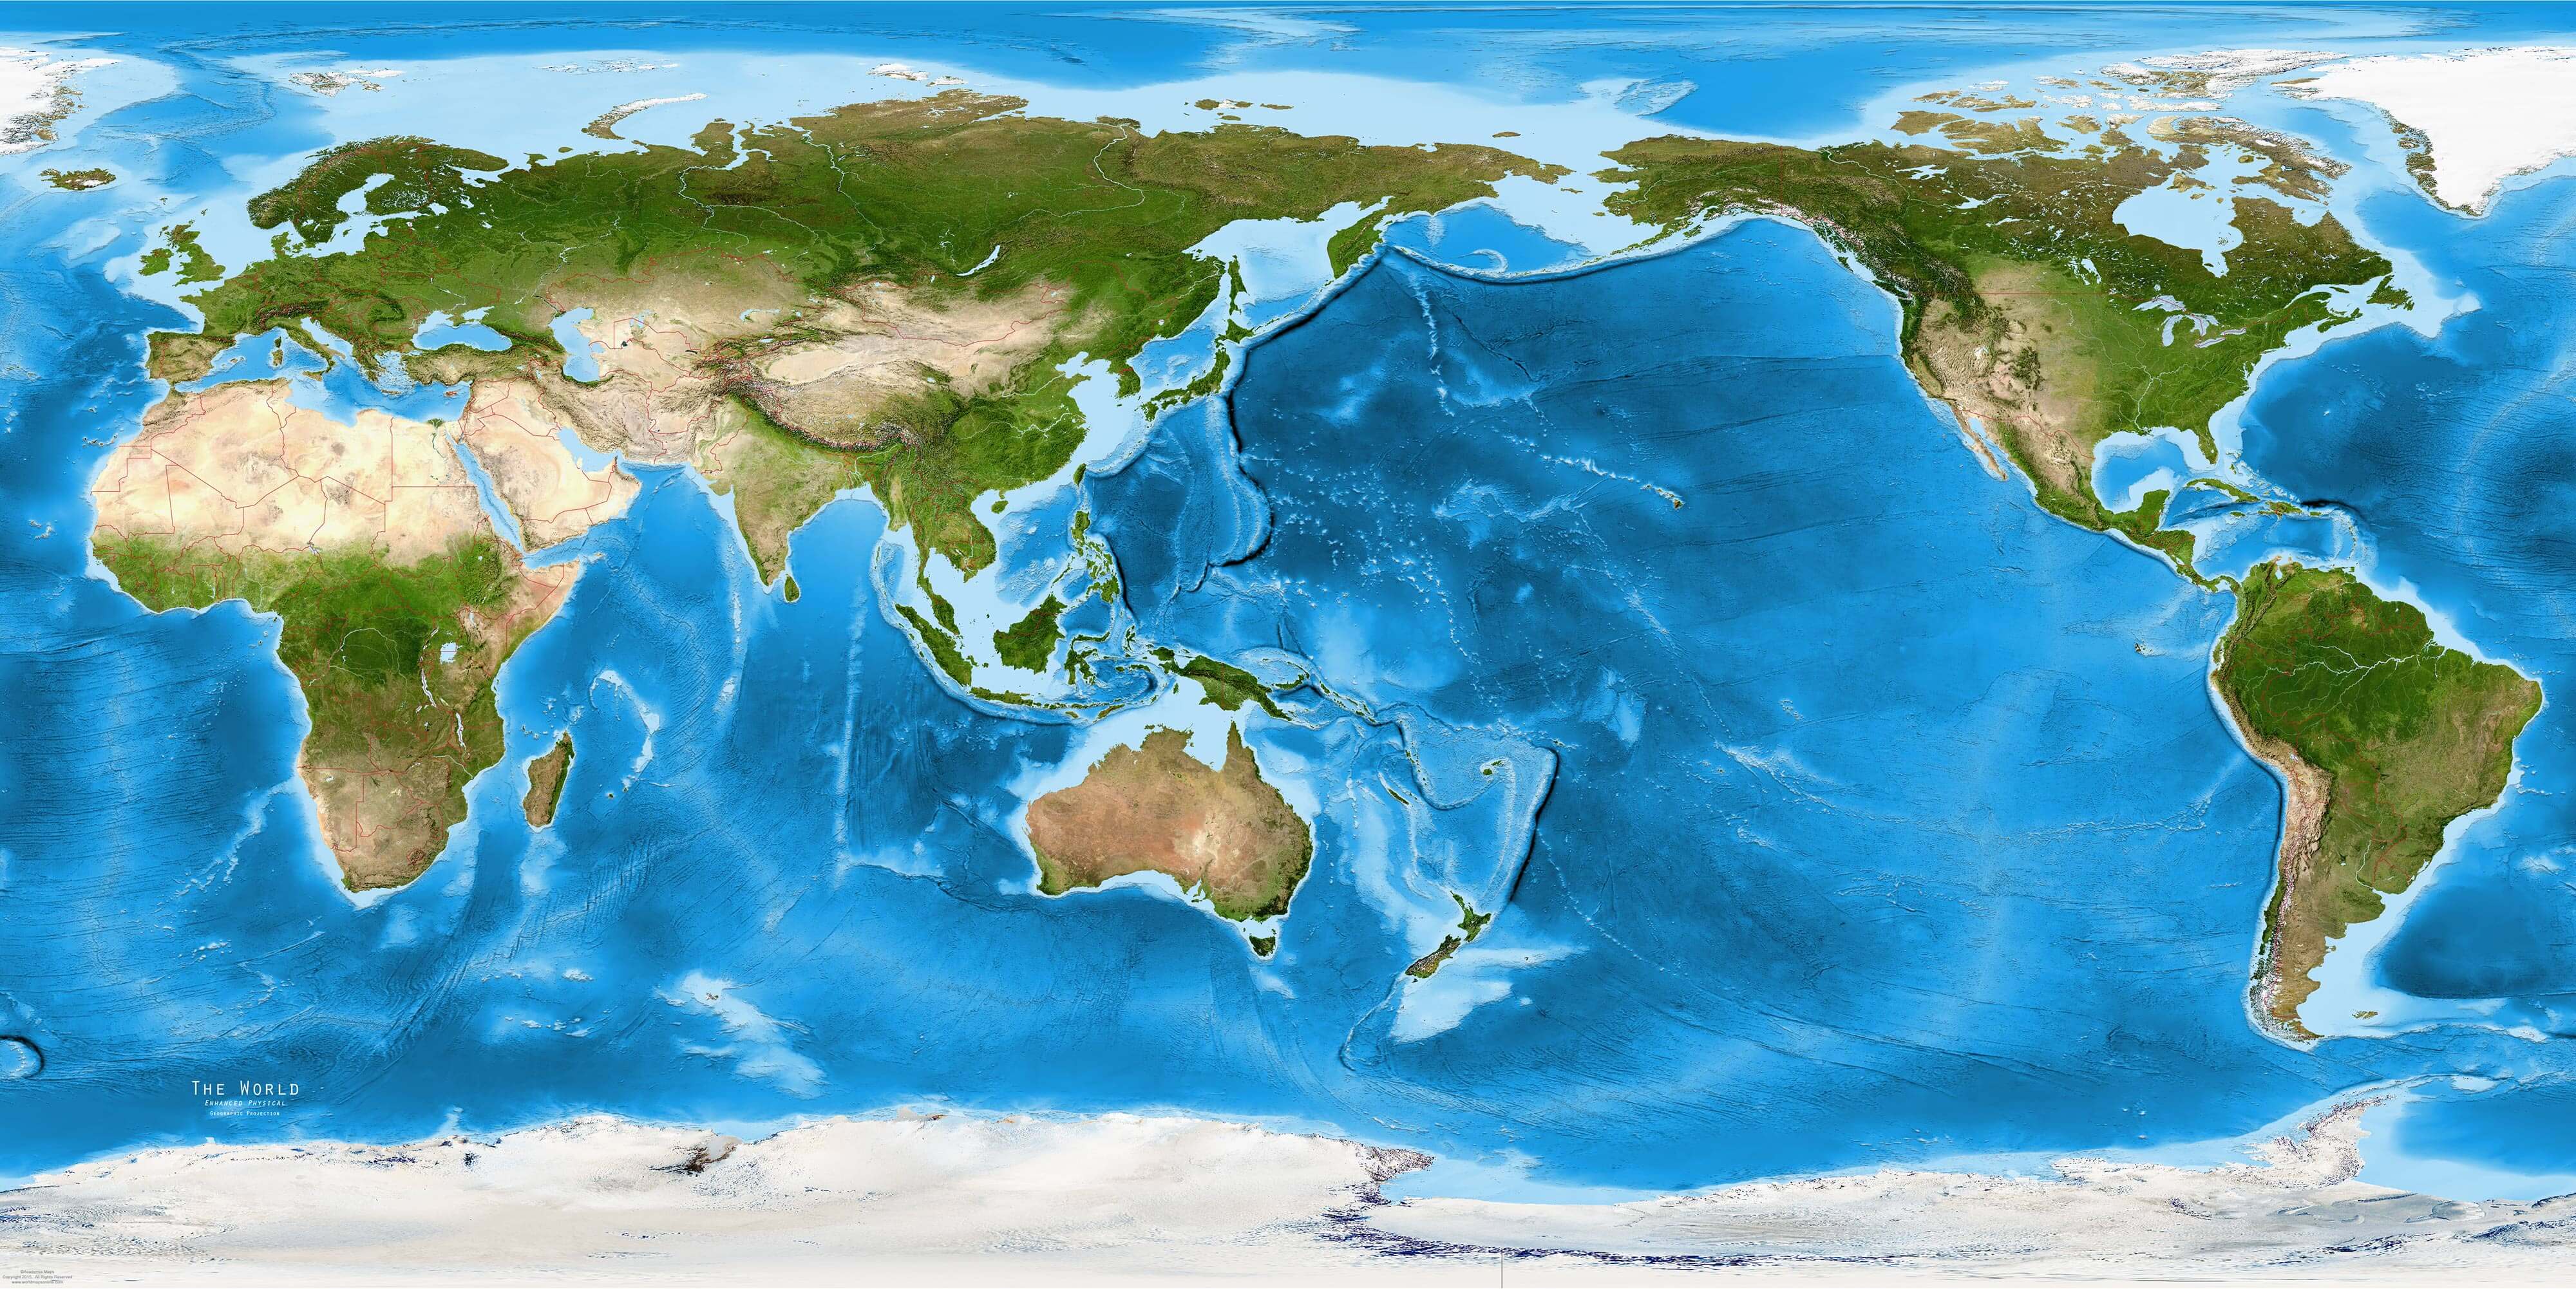 World s oceans. Тропико-атлантическая область мирового океана. Моря земли. Планета океан. Планета мировой океан.